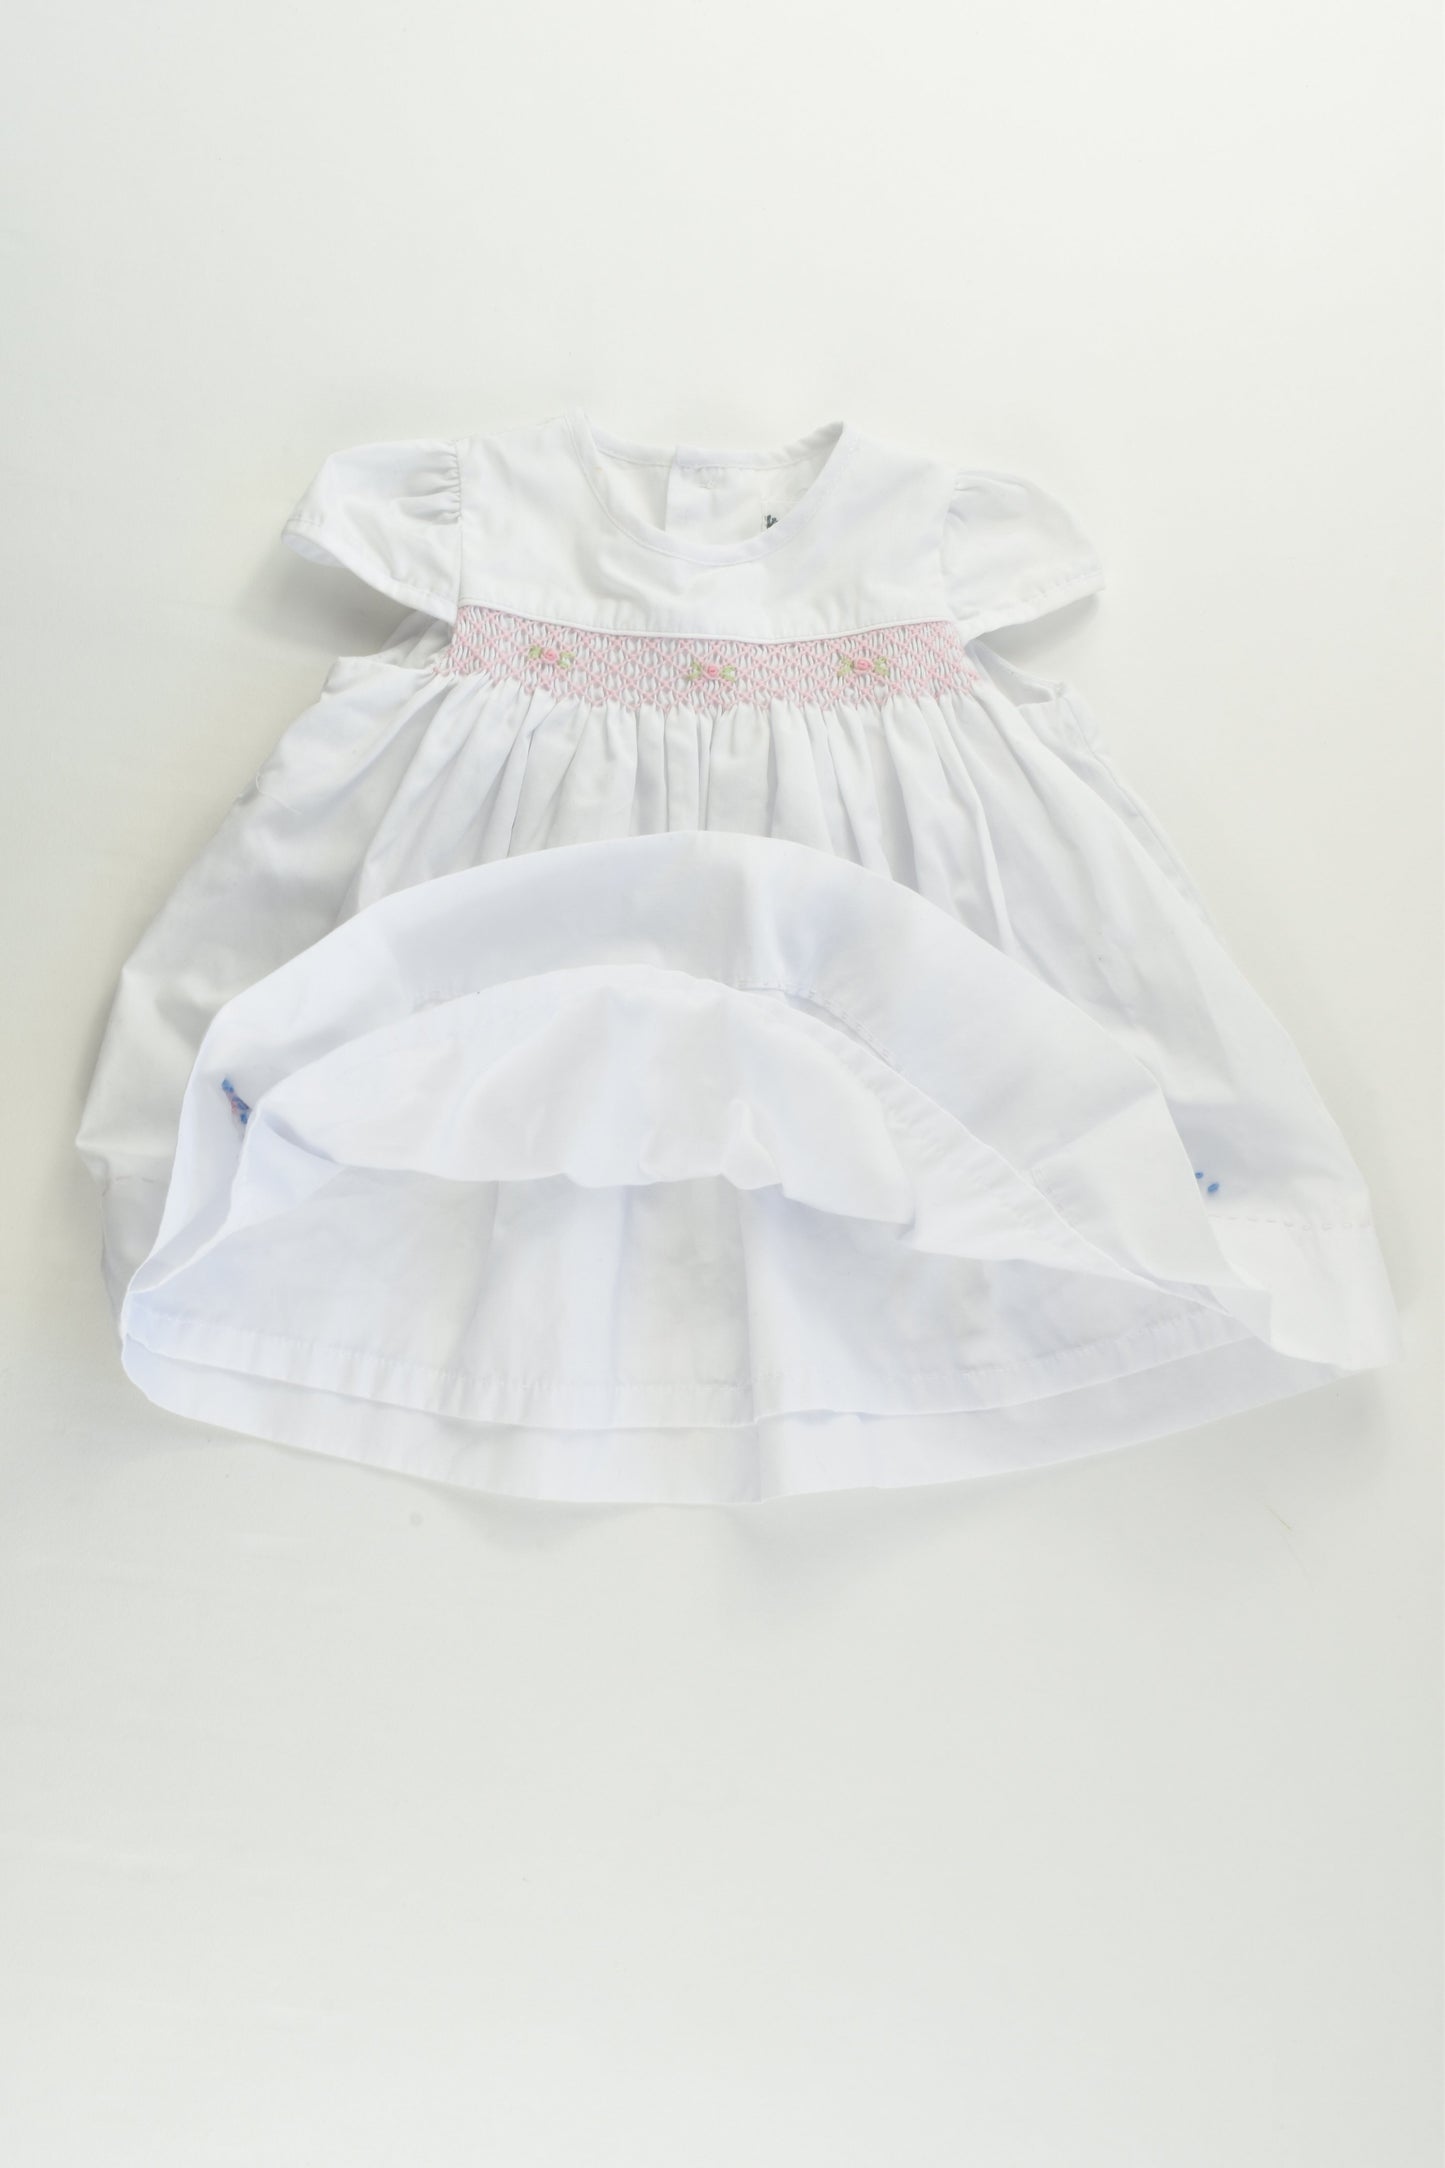 Korango (AU) Size 000 (0-3 months) Lined Smocked Dress